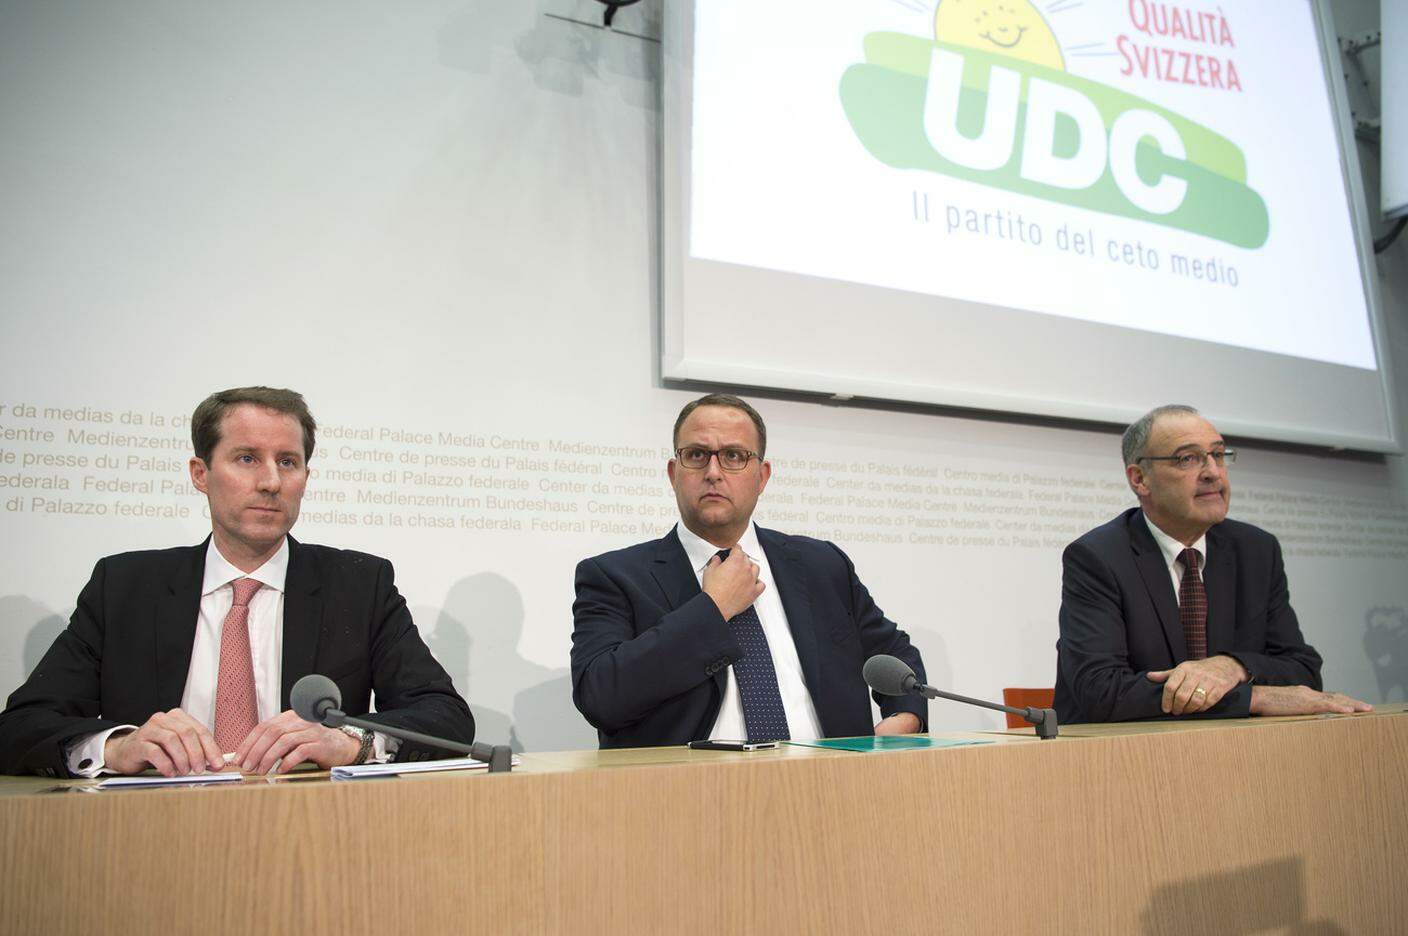 Il "tricket" UDC, con Aeschi, Gobbi e Parmelin, nell'imminenza del voto del 2015 per il rinnovo del Consiglio federale